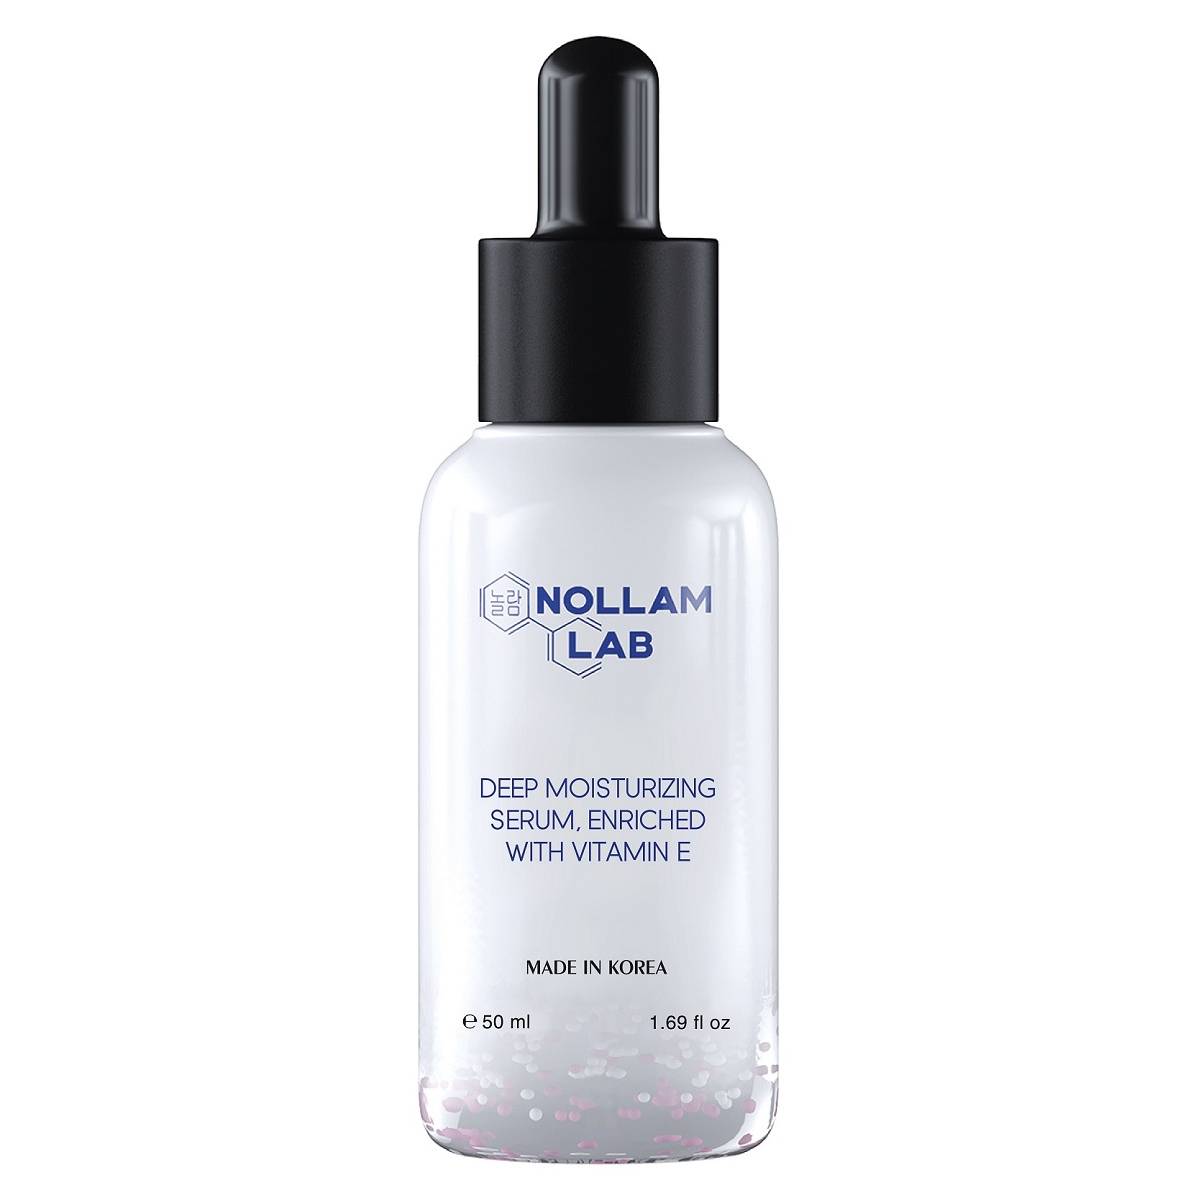 Nollam Lab Сыворотка для глубокого увлажнения, обогащенная витамином E, 50 мл (Nollam Lab, Face)